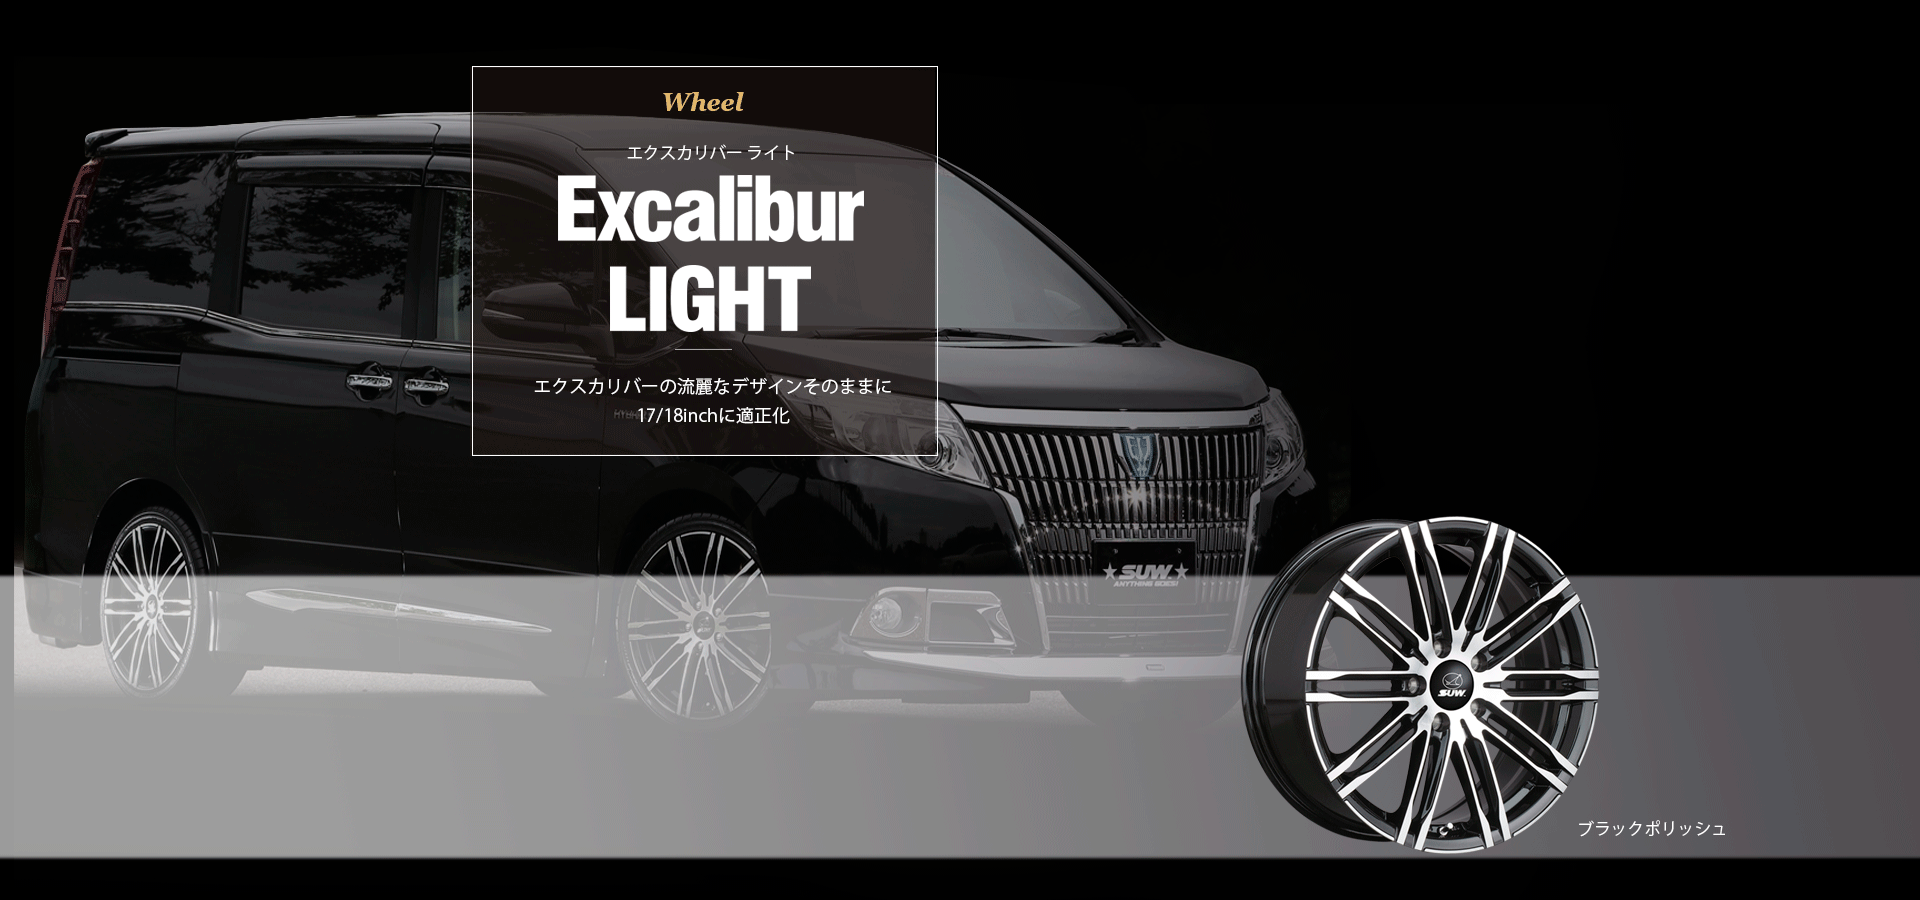 Excalibur LIGHT